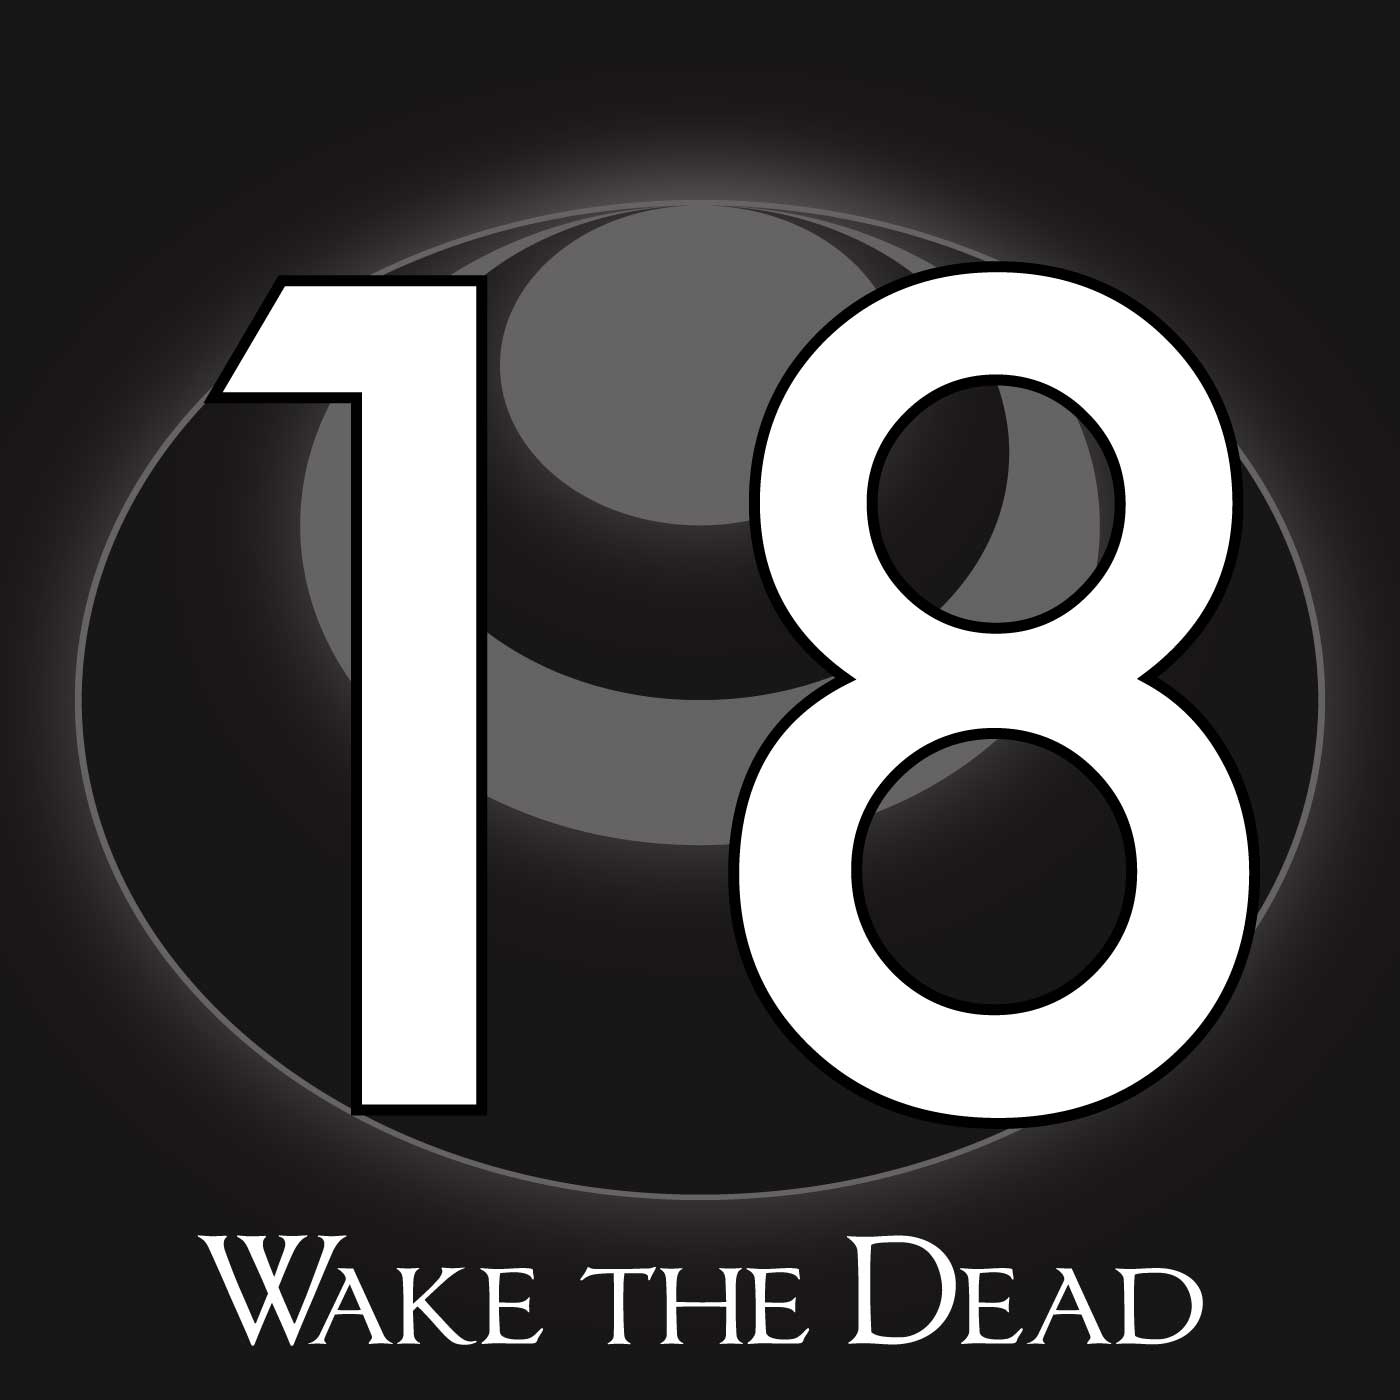 18 – Wake the Dead